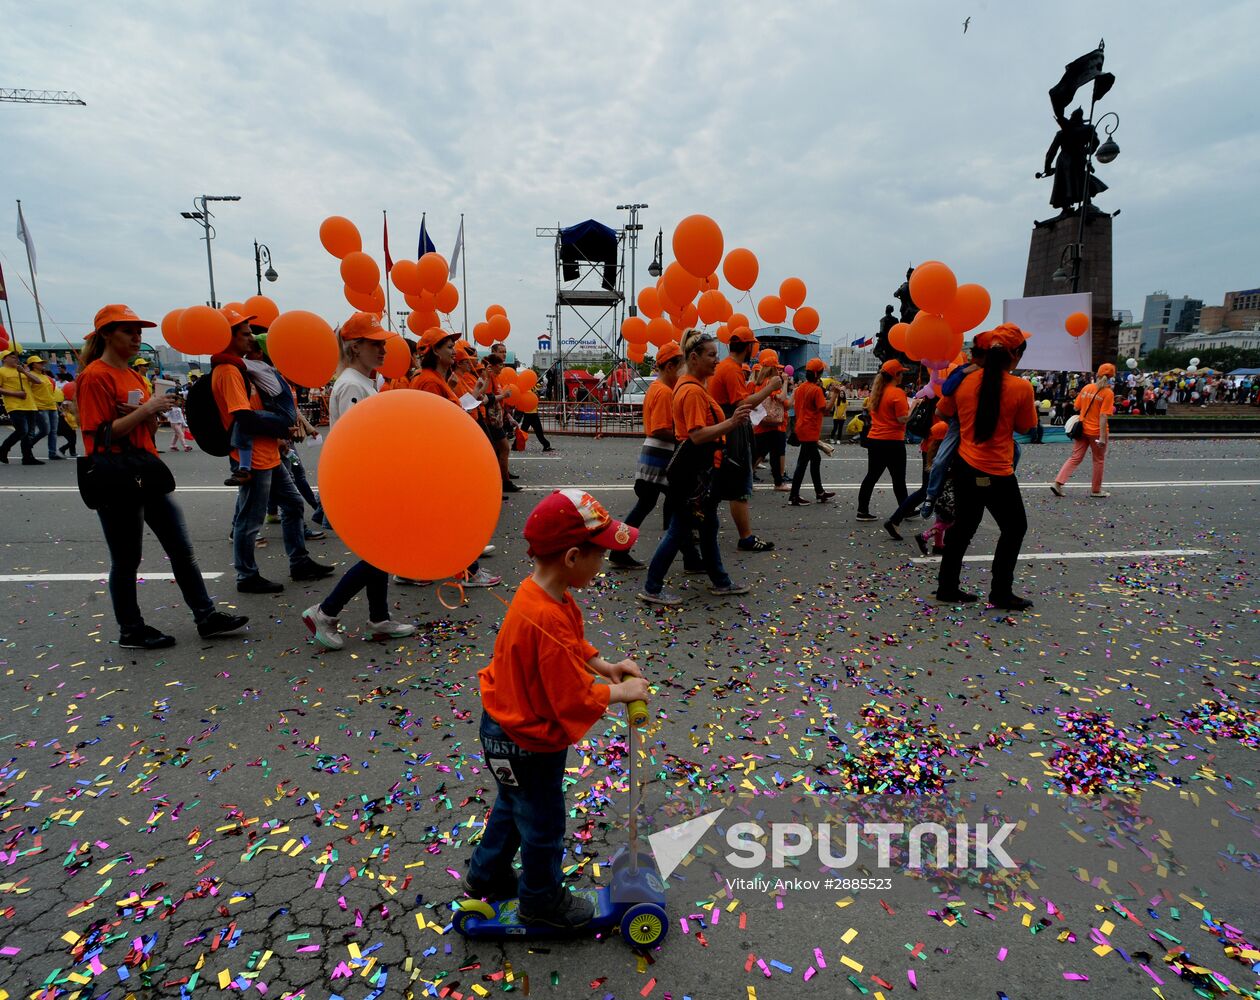 Vladivostok celebrates City Day